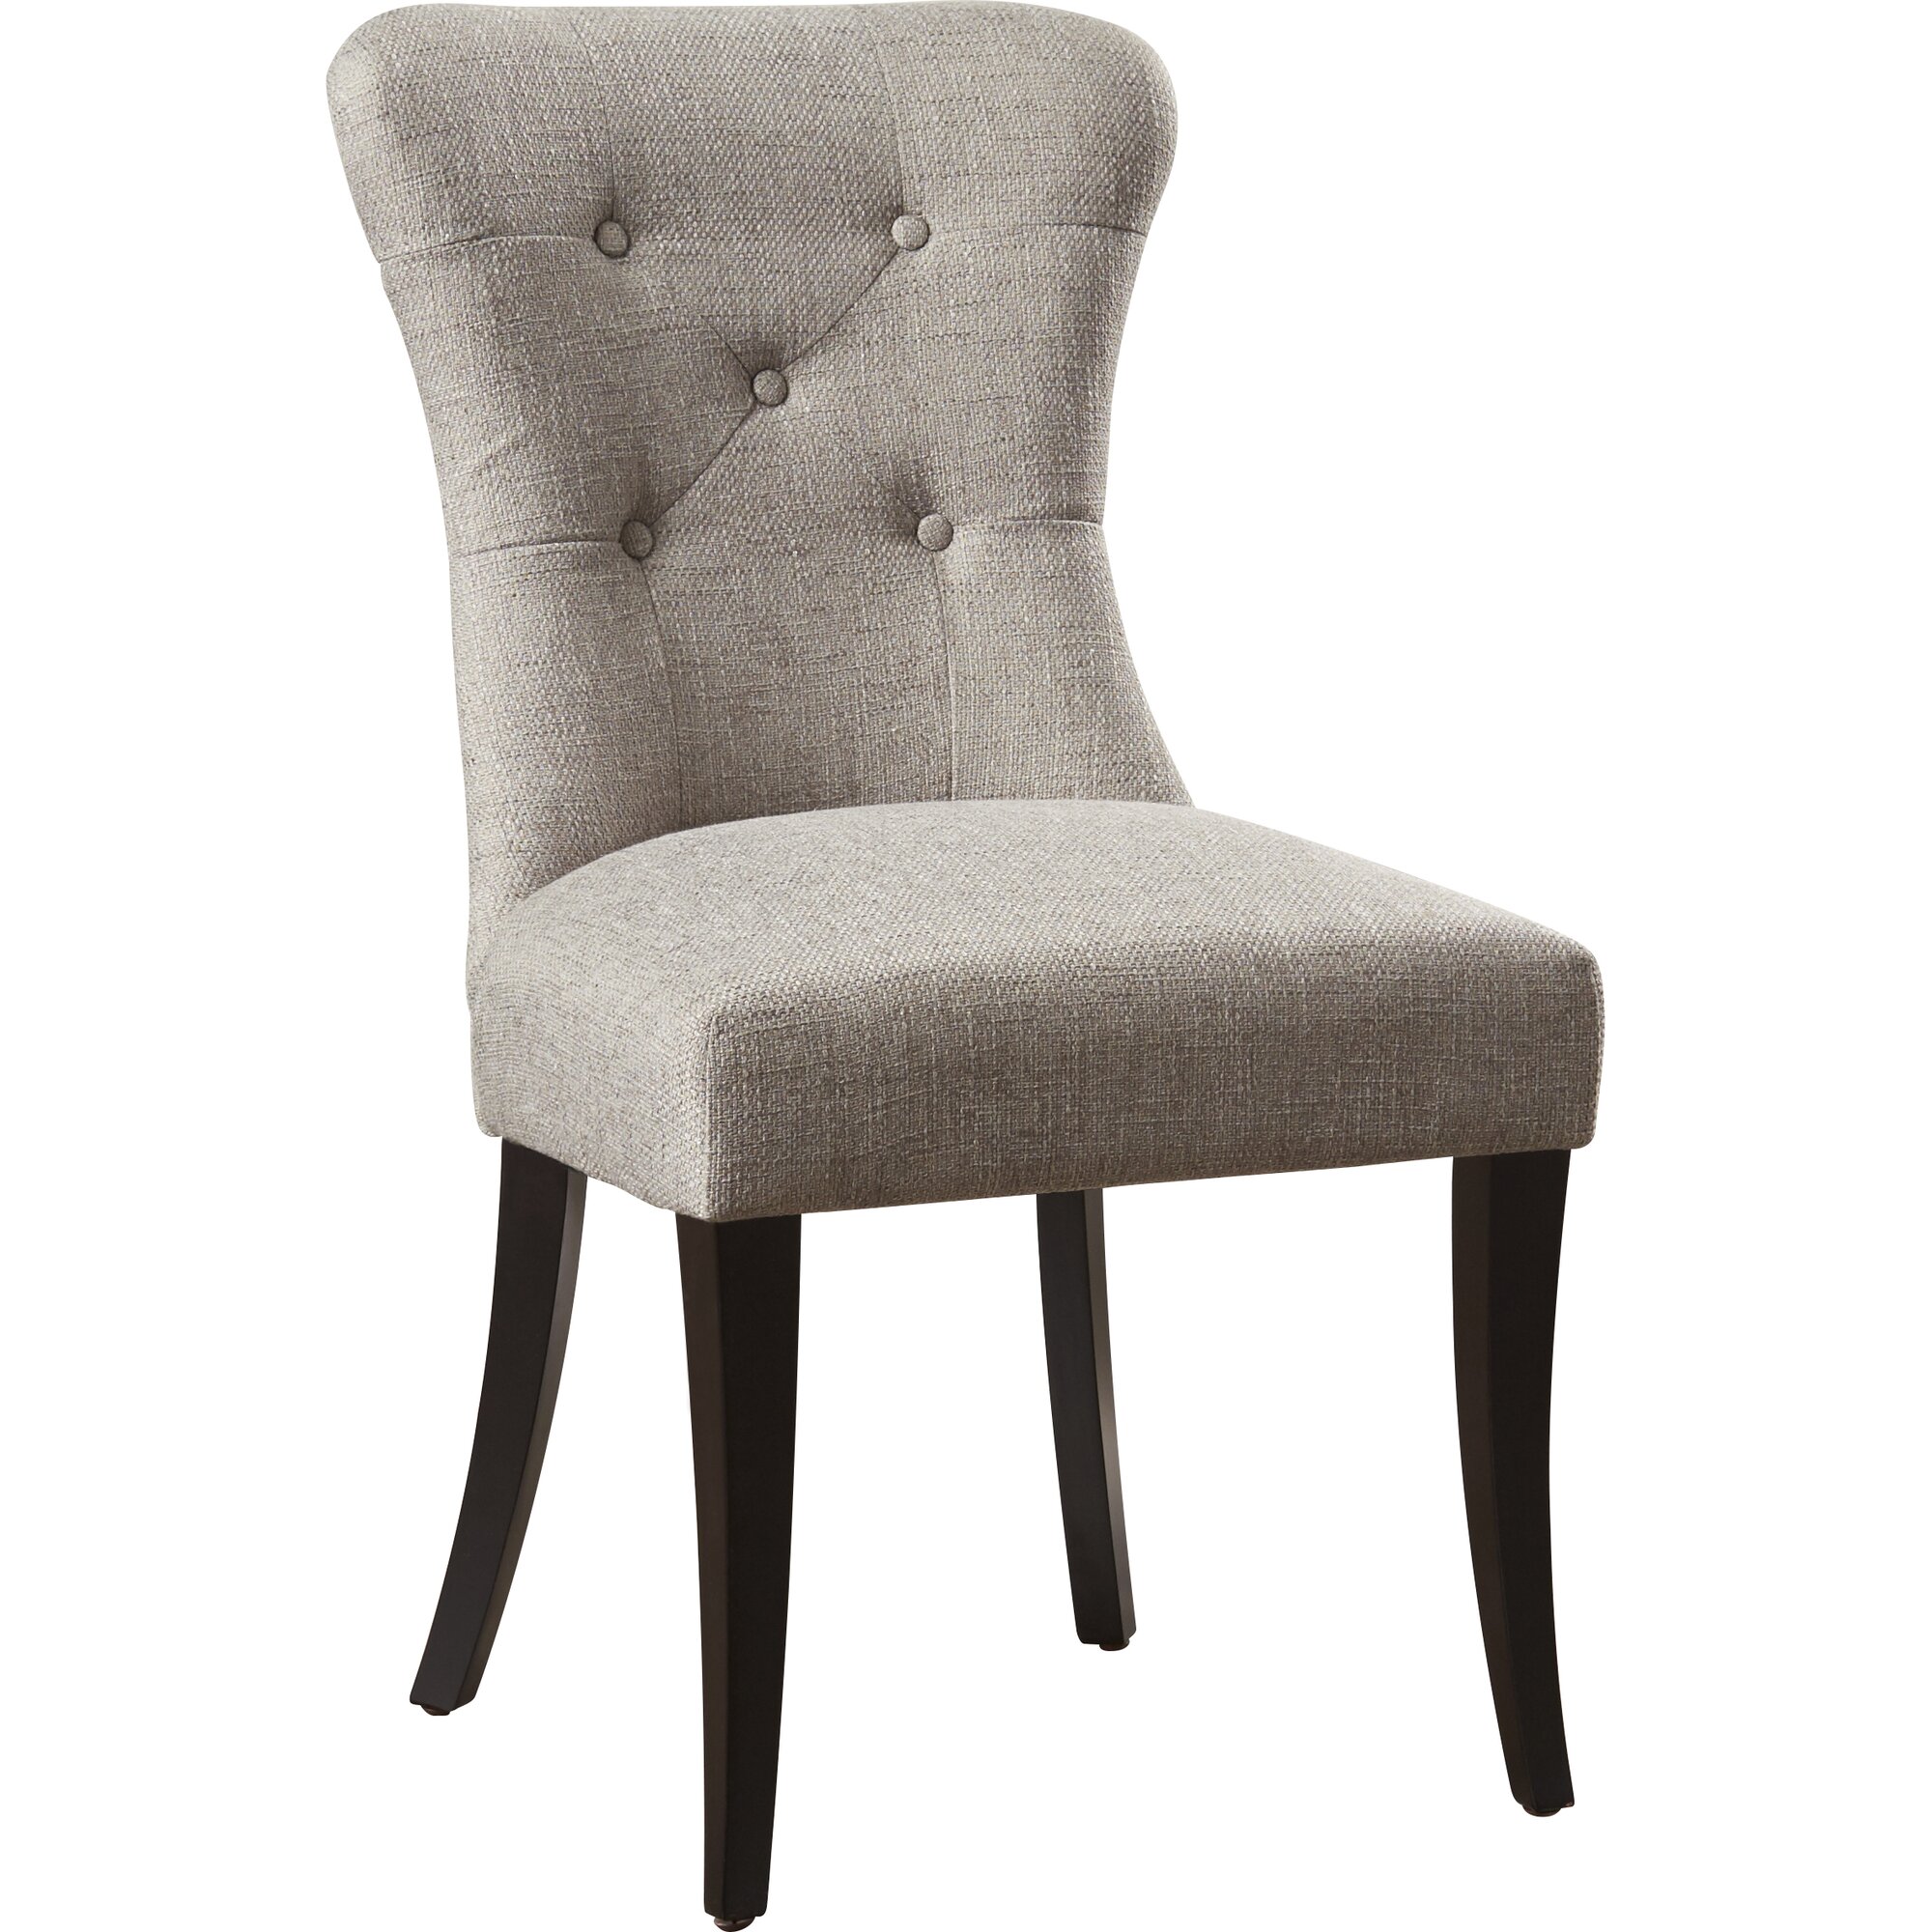 Latitude Run Parsons Chair & Reviews | Wayfair